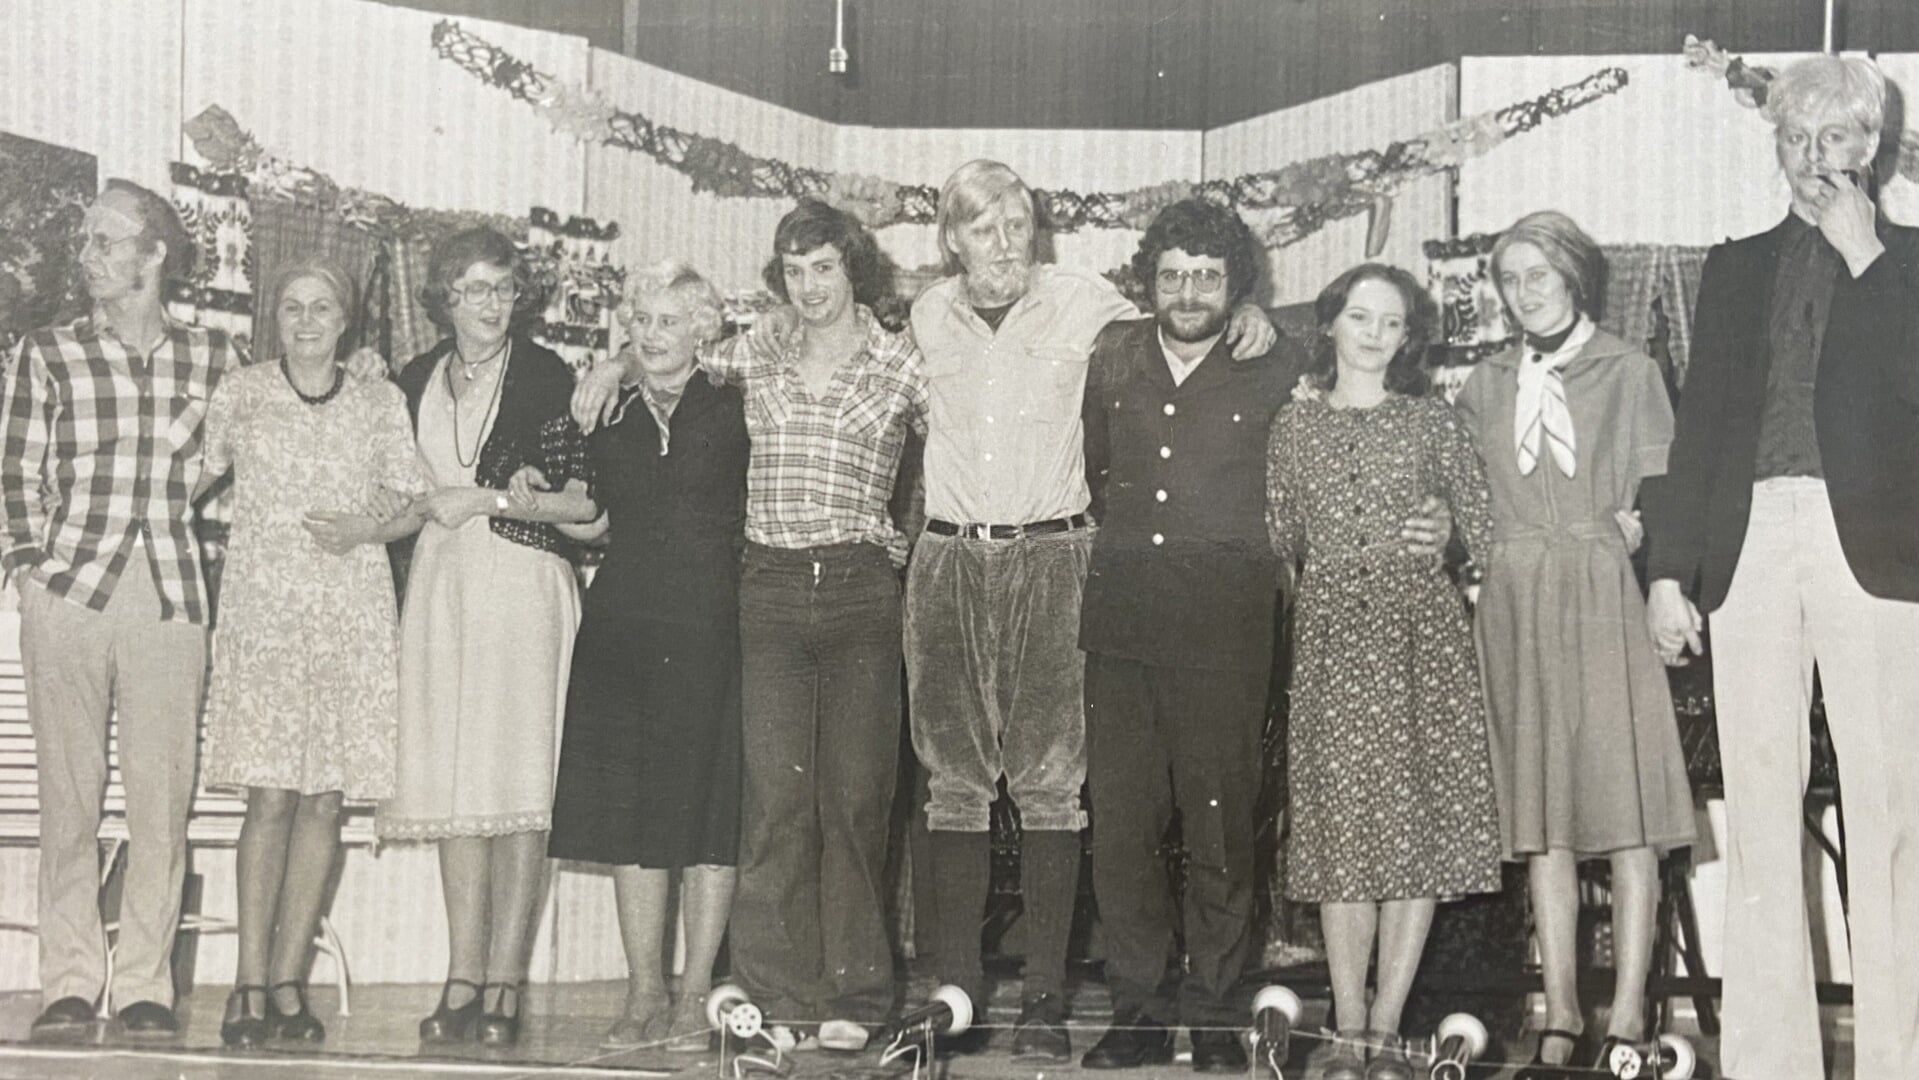 'Tum Tum' na de uitvoering in 1978, met van links naar rechts Pieter Oost, Jannie Brands-Oost, Co Loosman, Hennie Verhoeff-van Slooten, Albert Brouwer, Meindert Hakvoort, Michael Schijf, Grietje Baarssen, Hilda Korten en Menno Hakvoort.